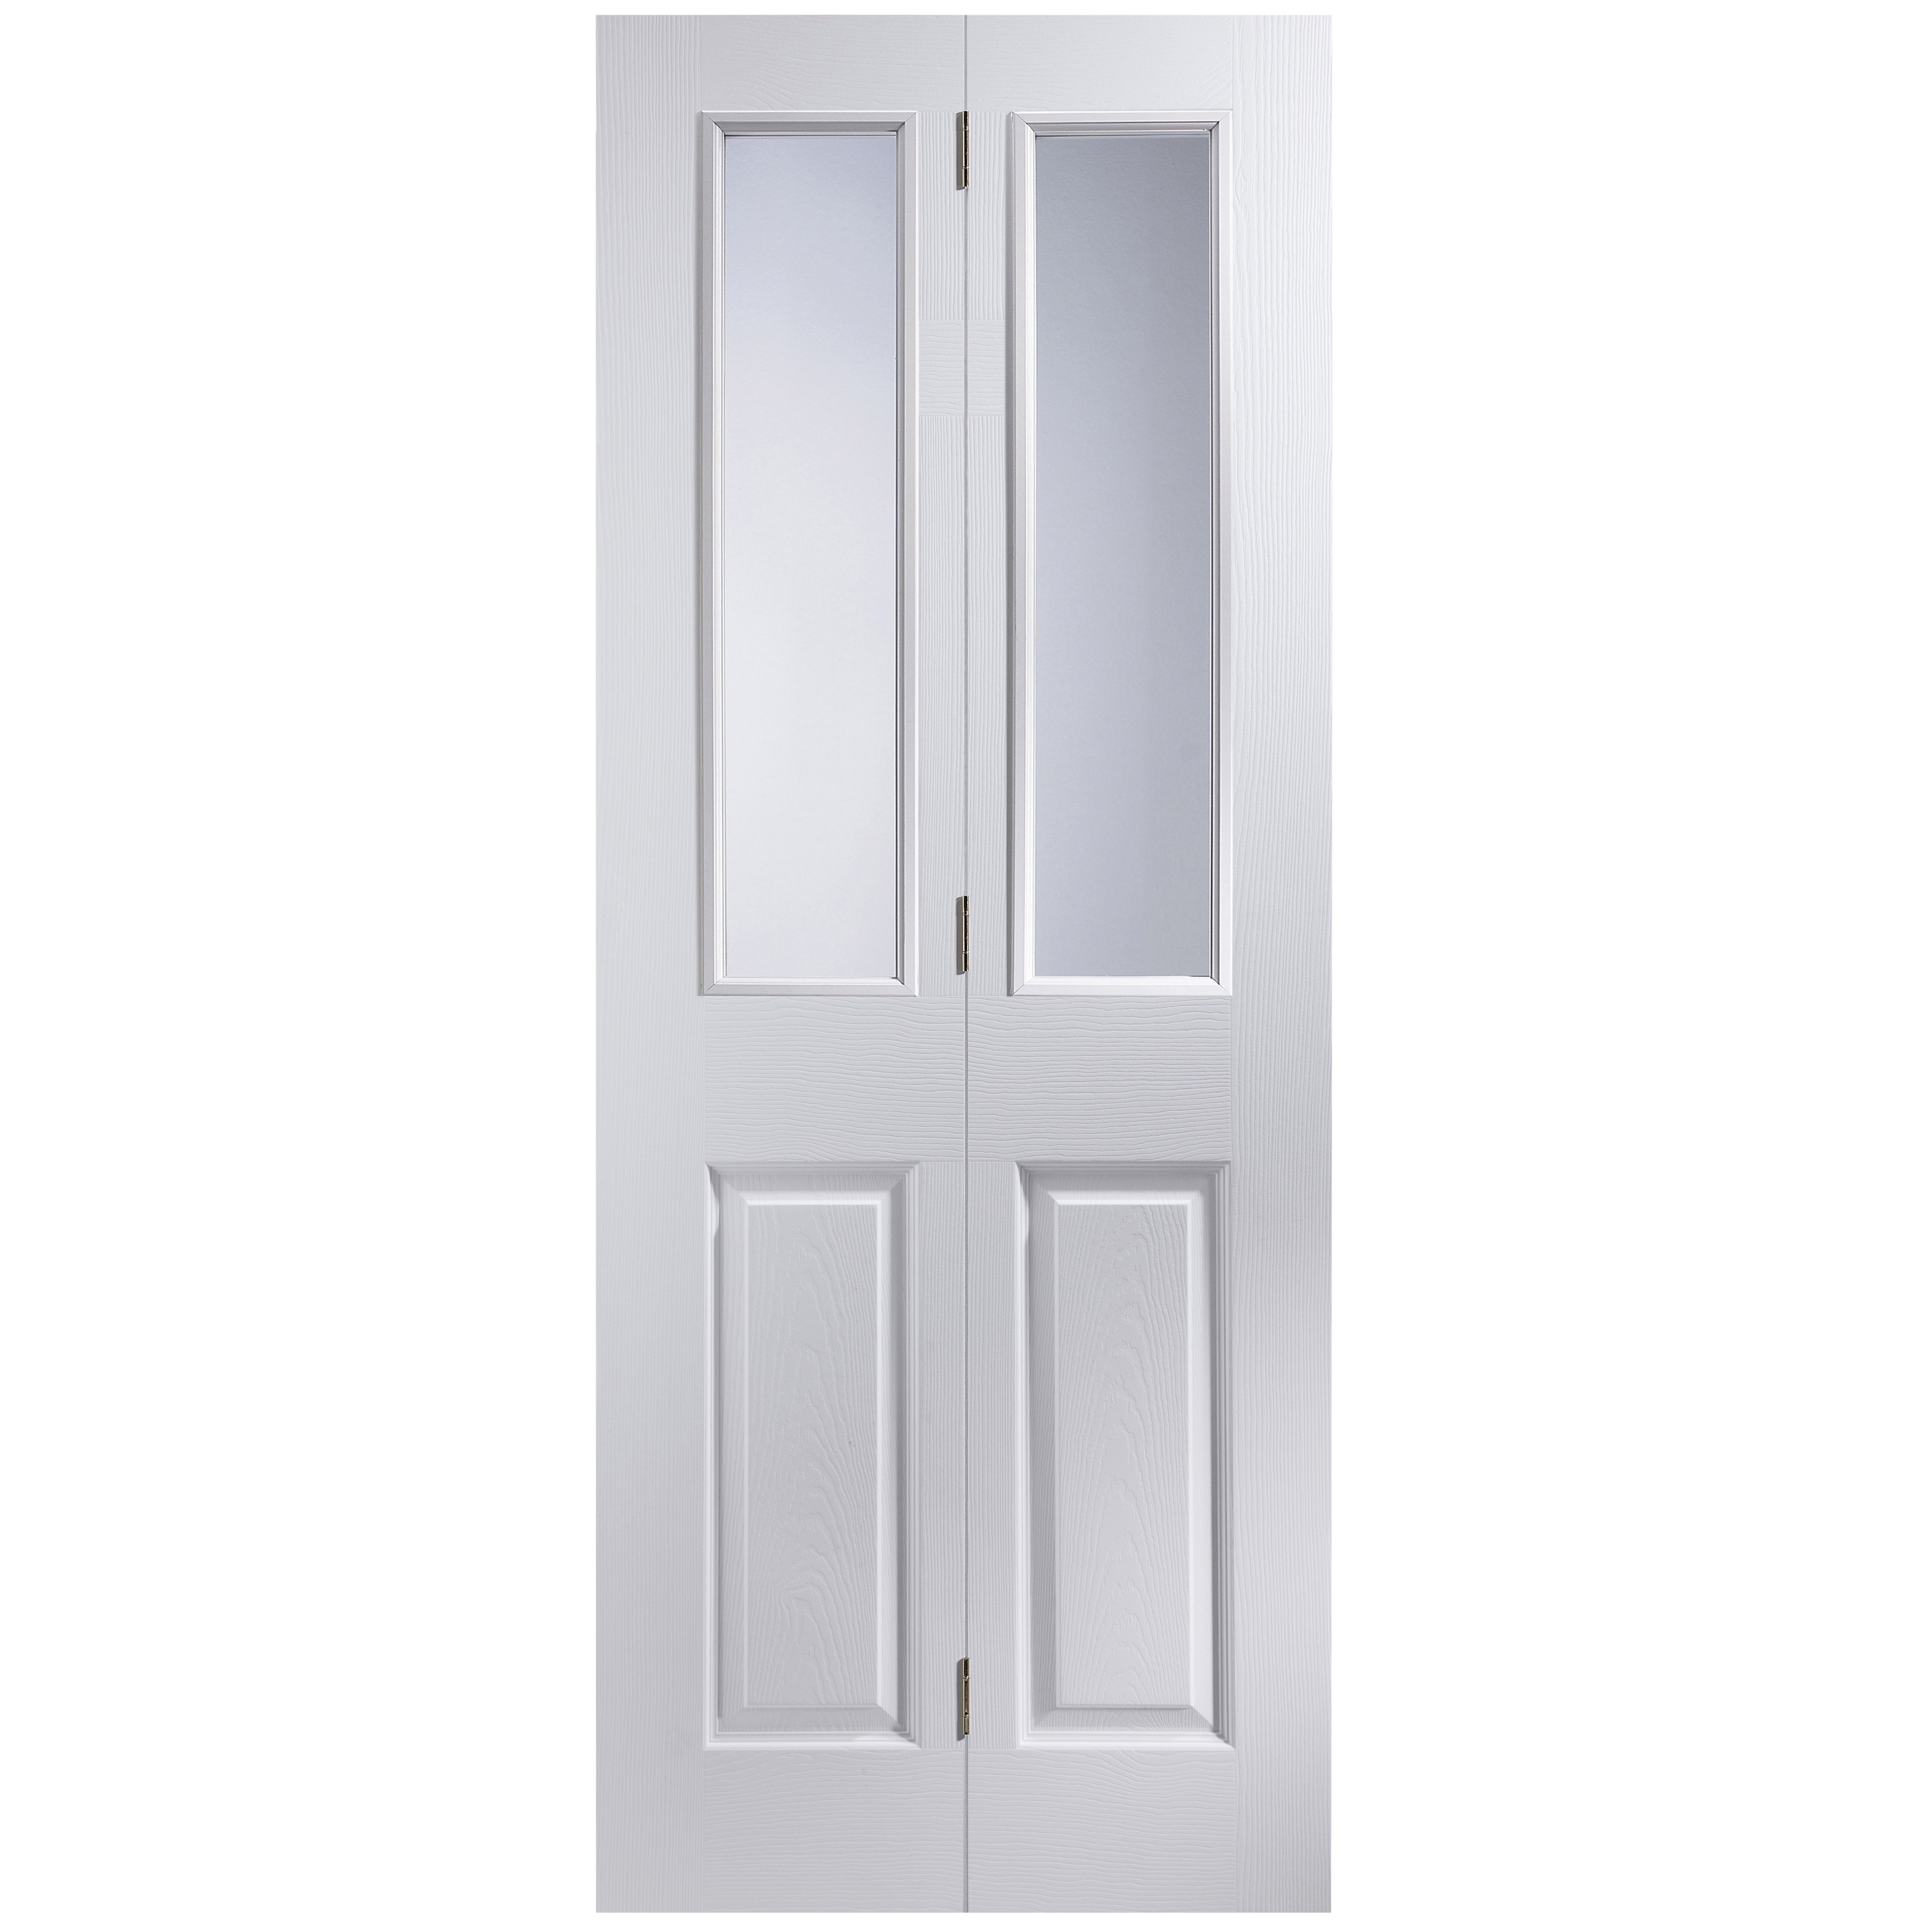 4 panel 2 Lite Primed Bi-fold Door set, (H)1950mm (W)750mm